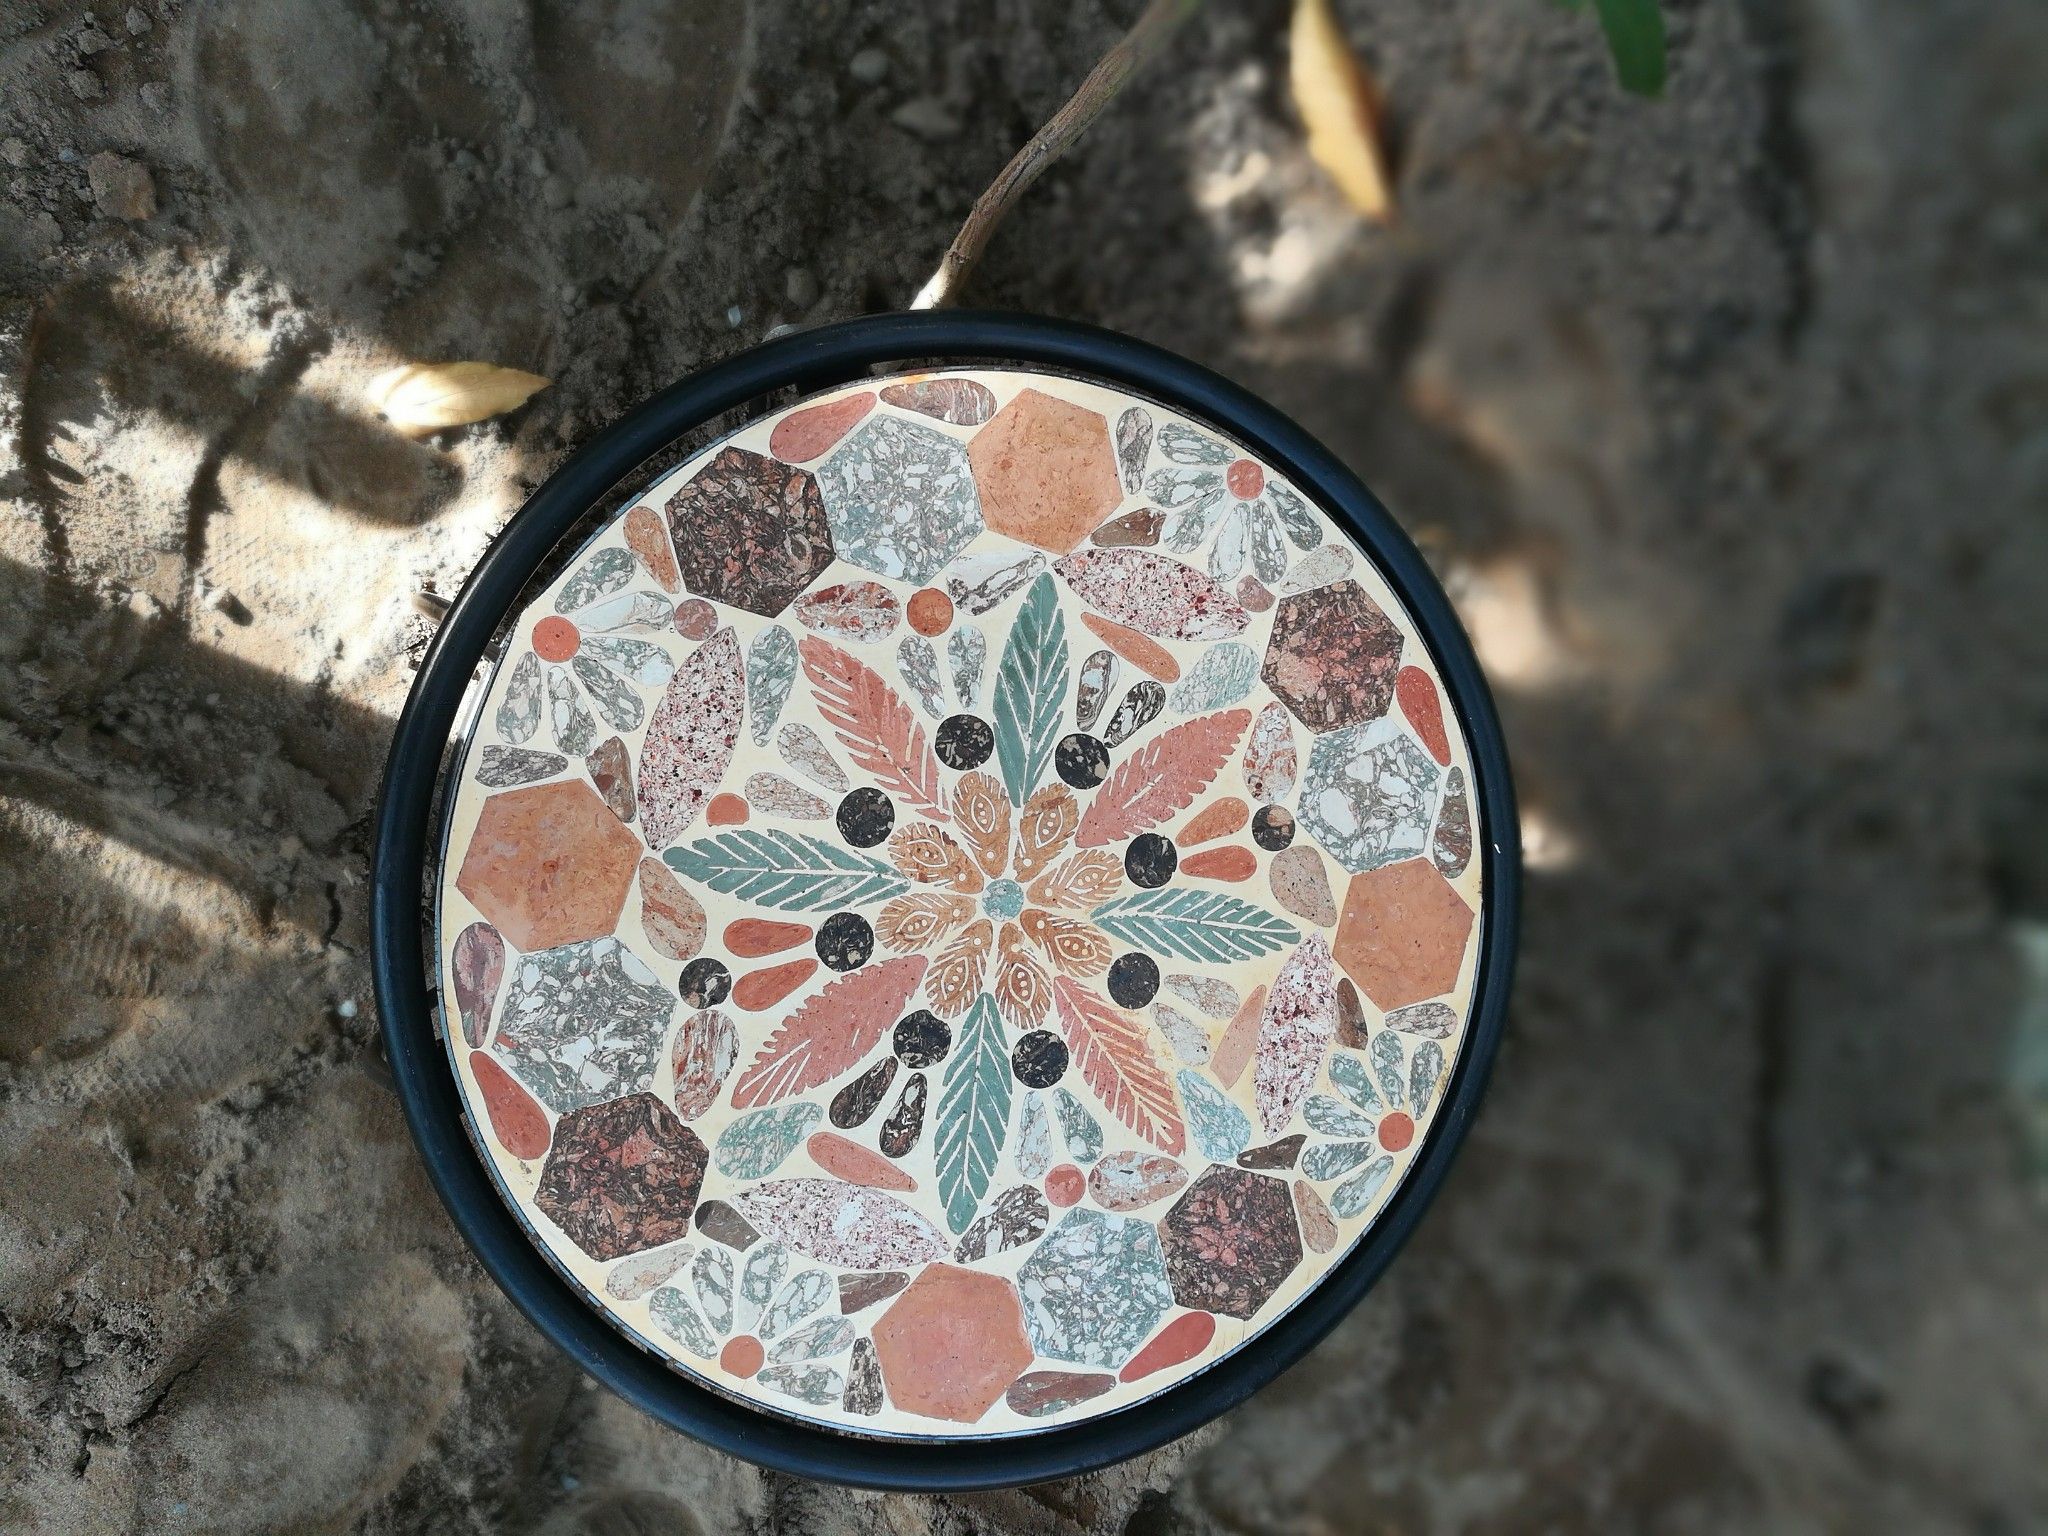  Mosaic cổ điển, đôn ghế gốm thấp, H25 cm 